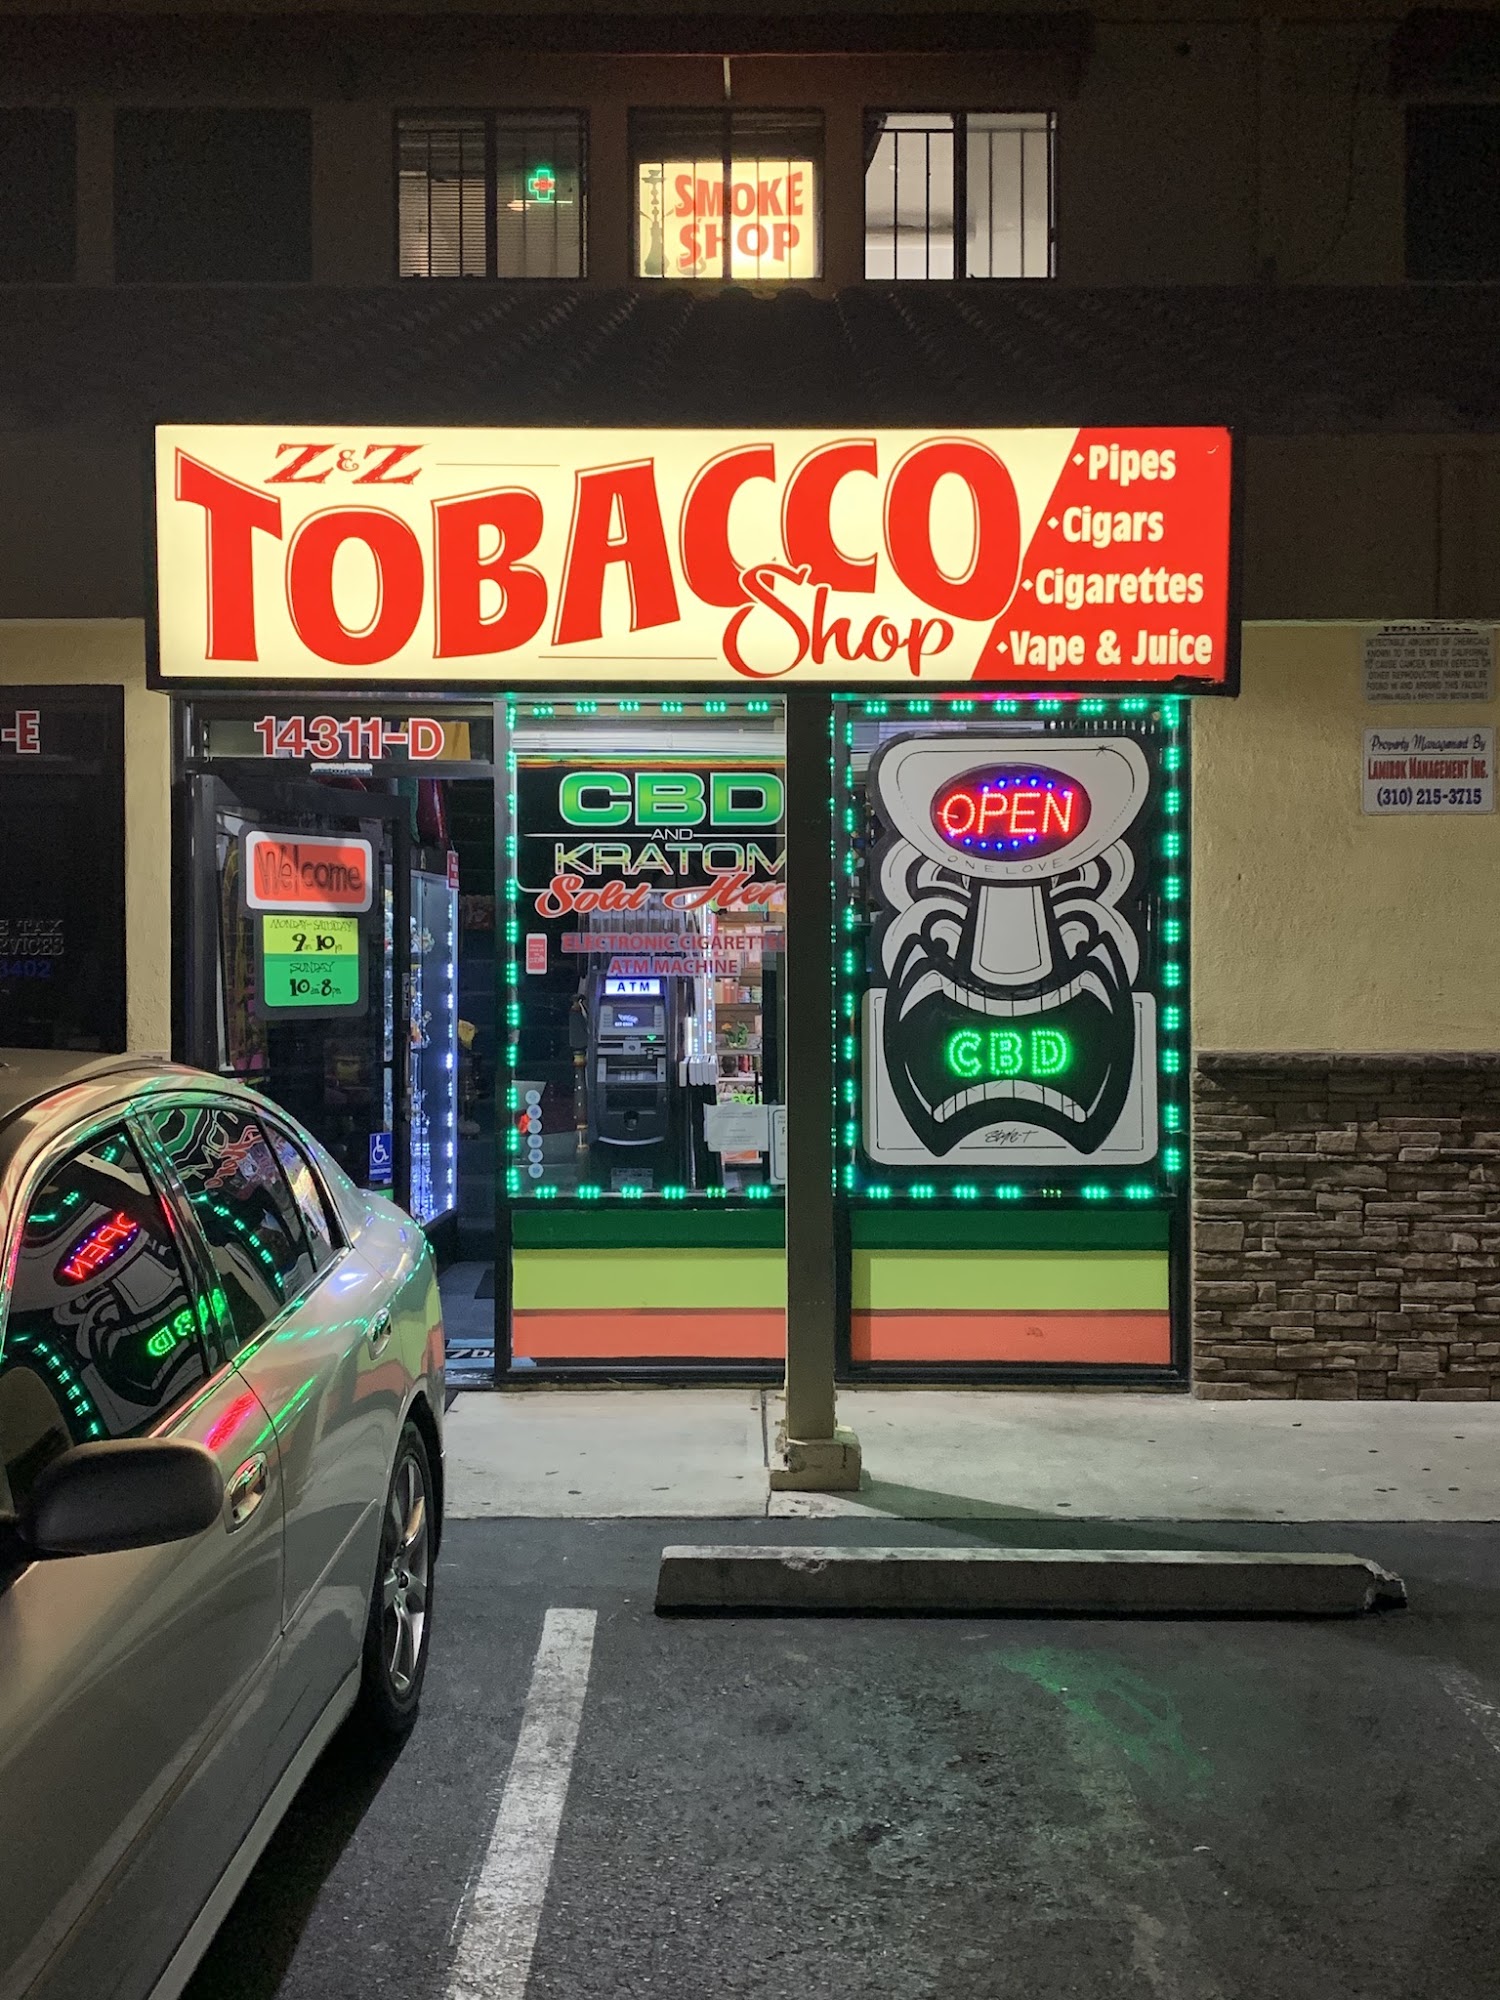 Z & Z Tobacco Shop